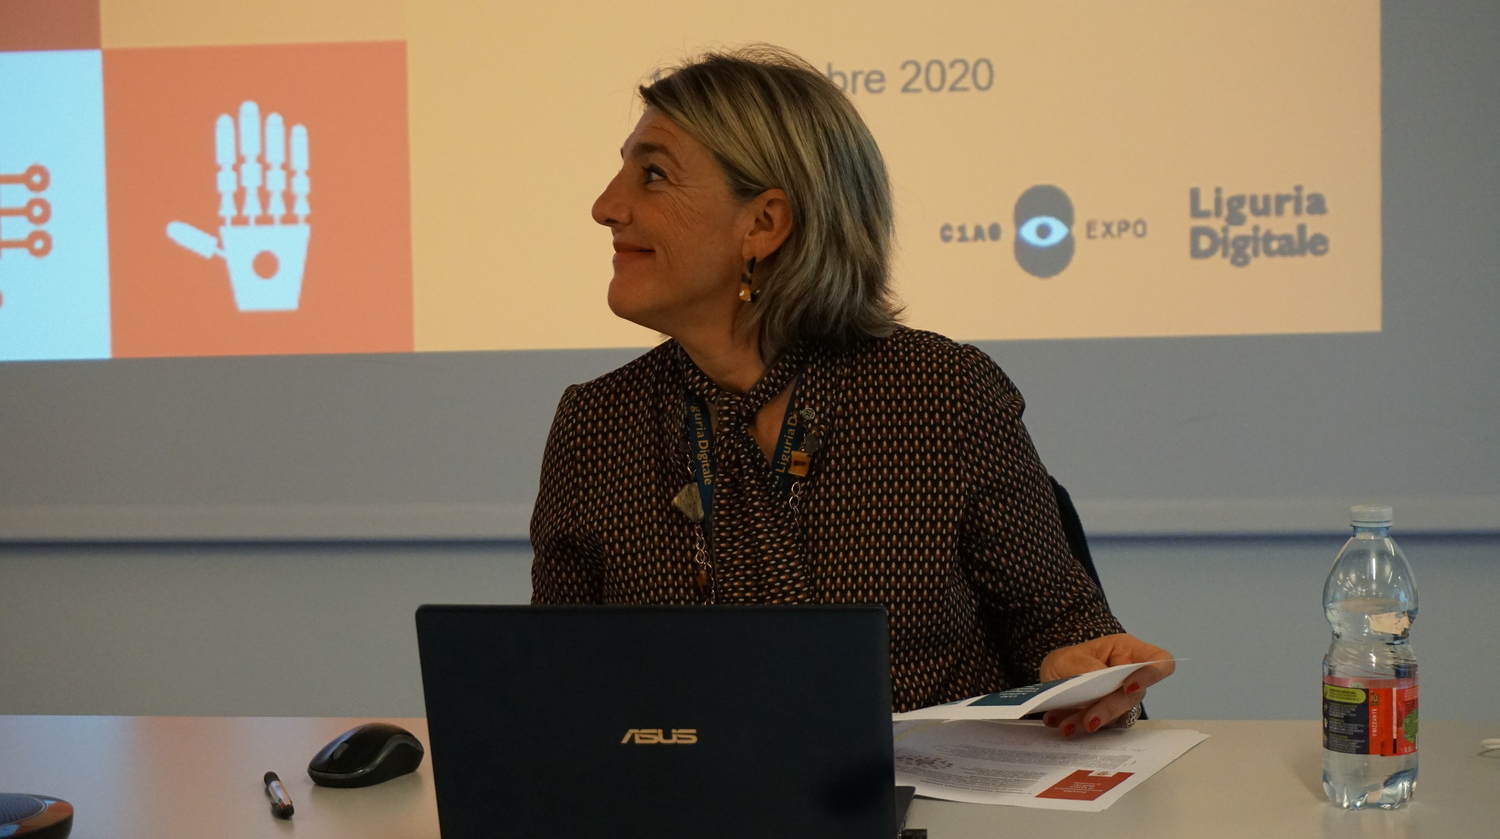 AI a Scuola - Monica Cavallini, PM di Scuola Digitale Liguria